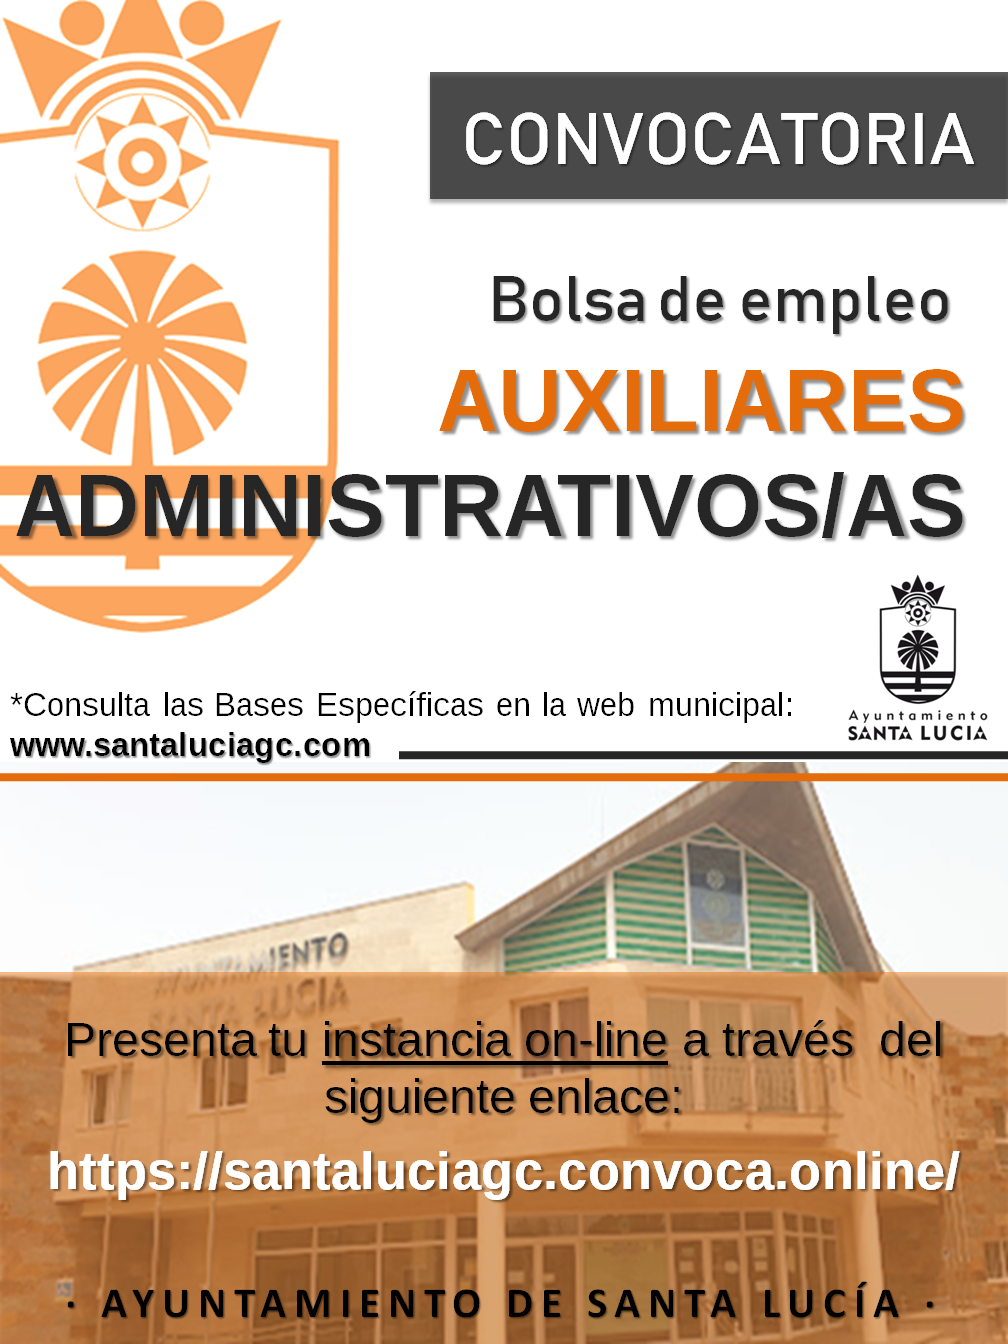  El Ayuntamiento de Santa Lucía abre la inscripción para crear una lista de reserva para auxiliares administrativos  y auxiliares administrativas